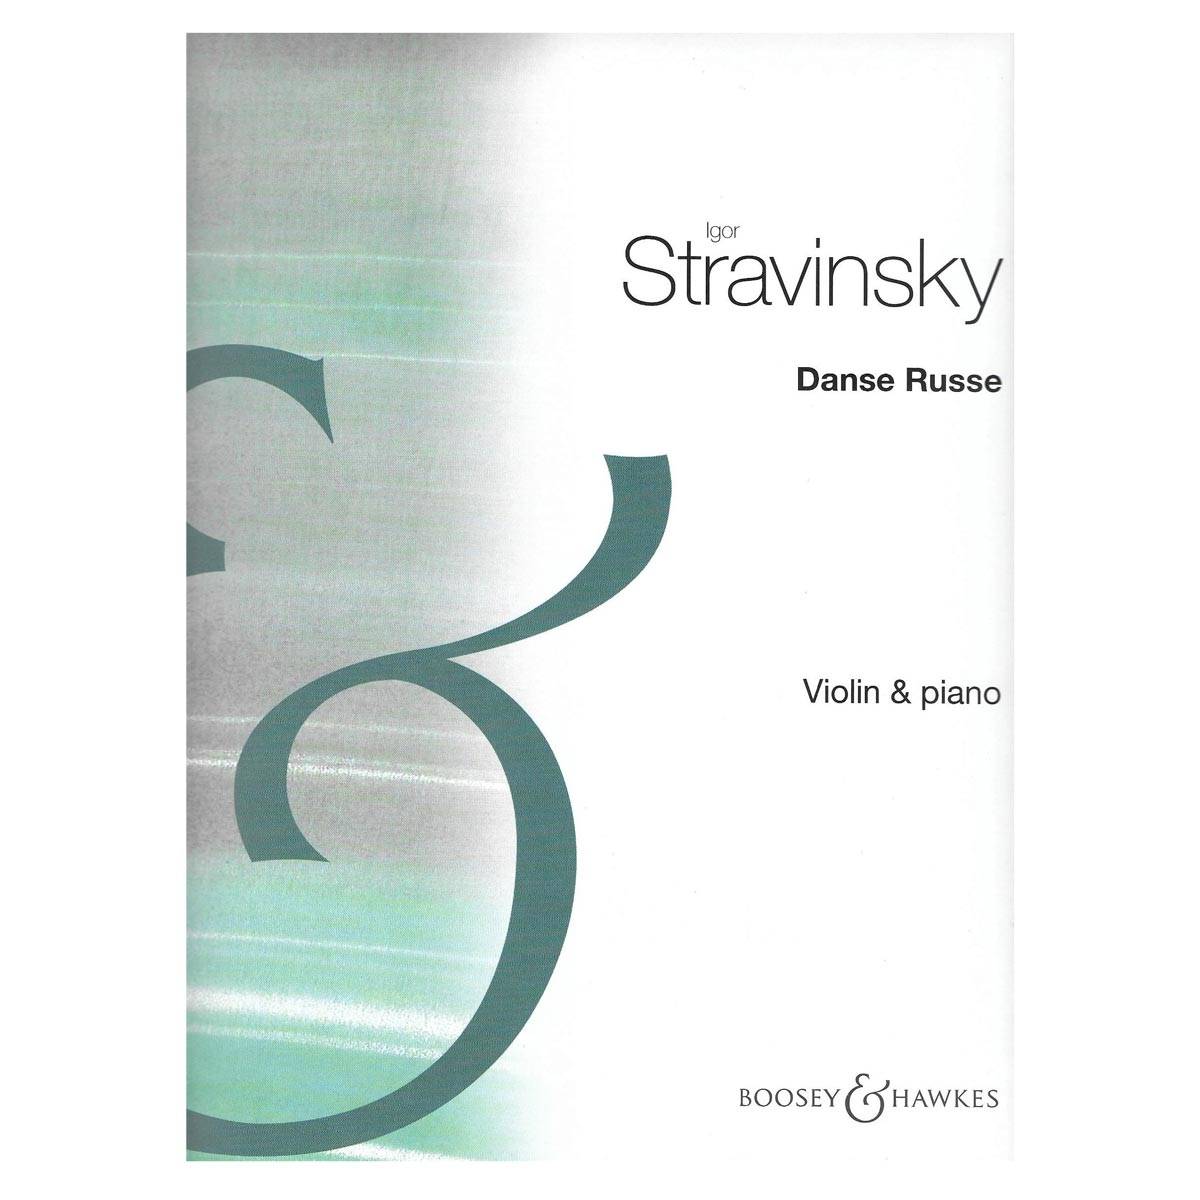 Stravinsky - Danse Russe